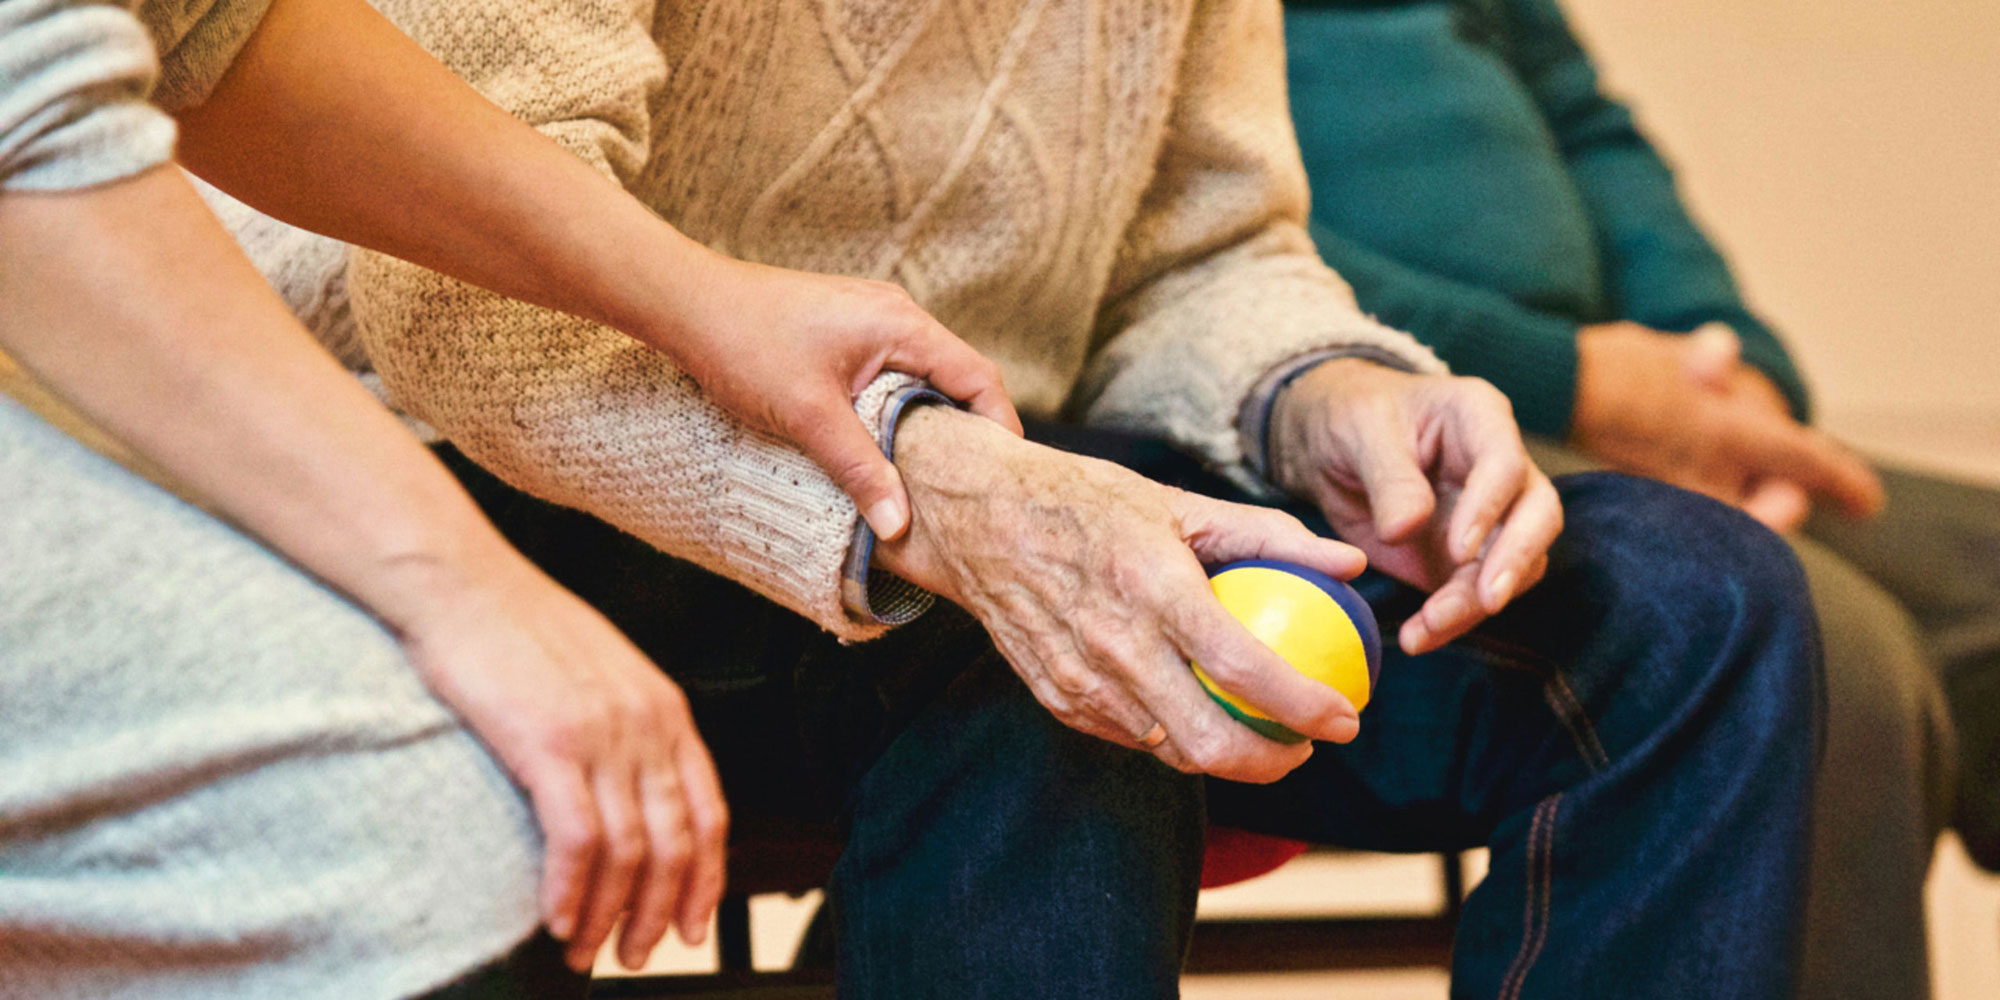 Elderly man's hands holding a stress relief ball